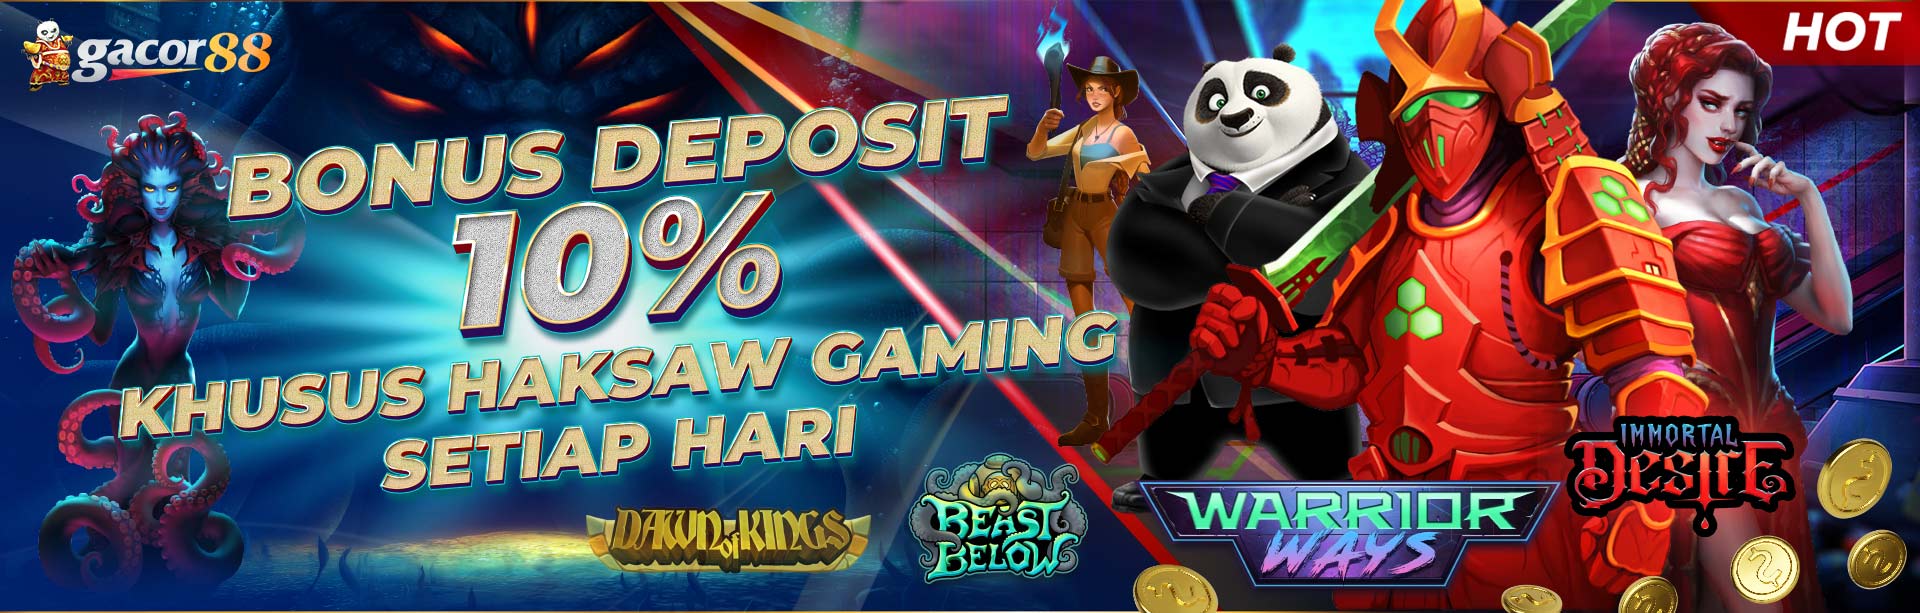 Bonus Deposit Harian Slot 10% hacksaw gaming Tiap Harinya